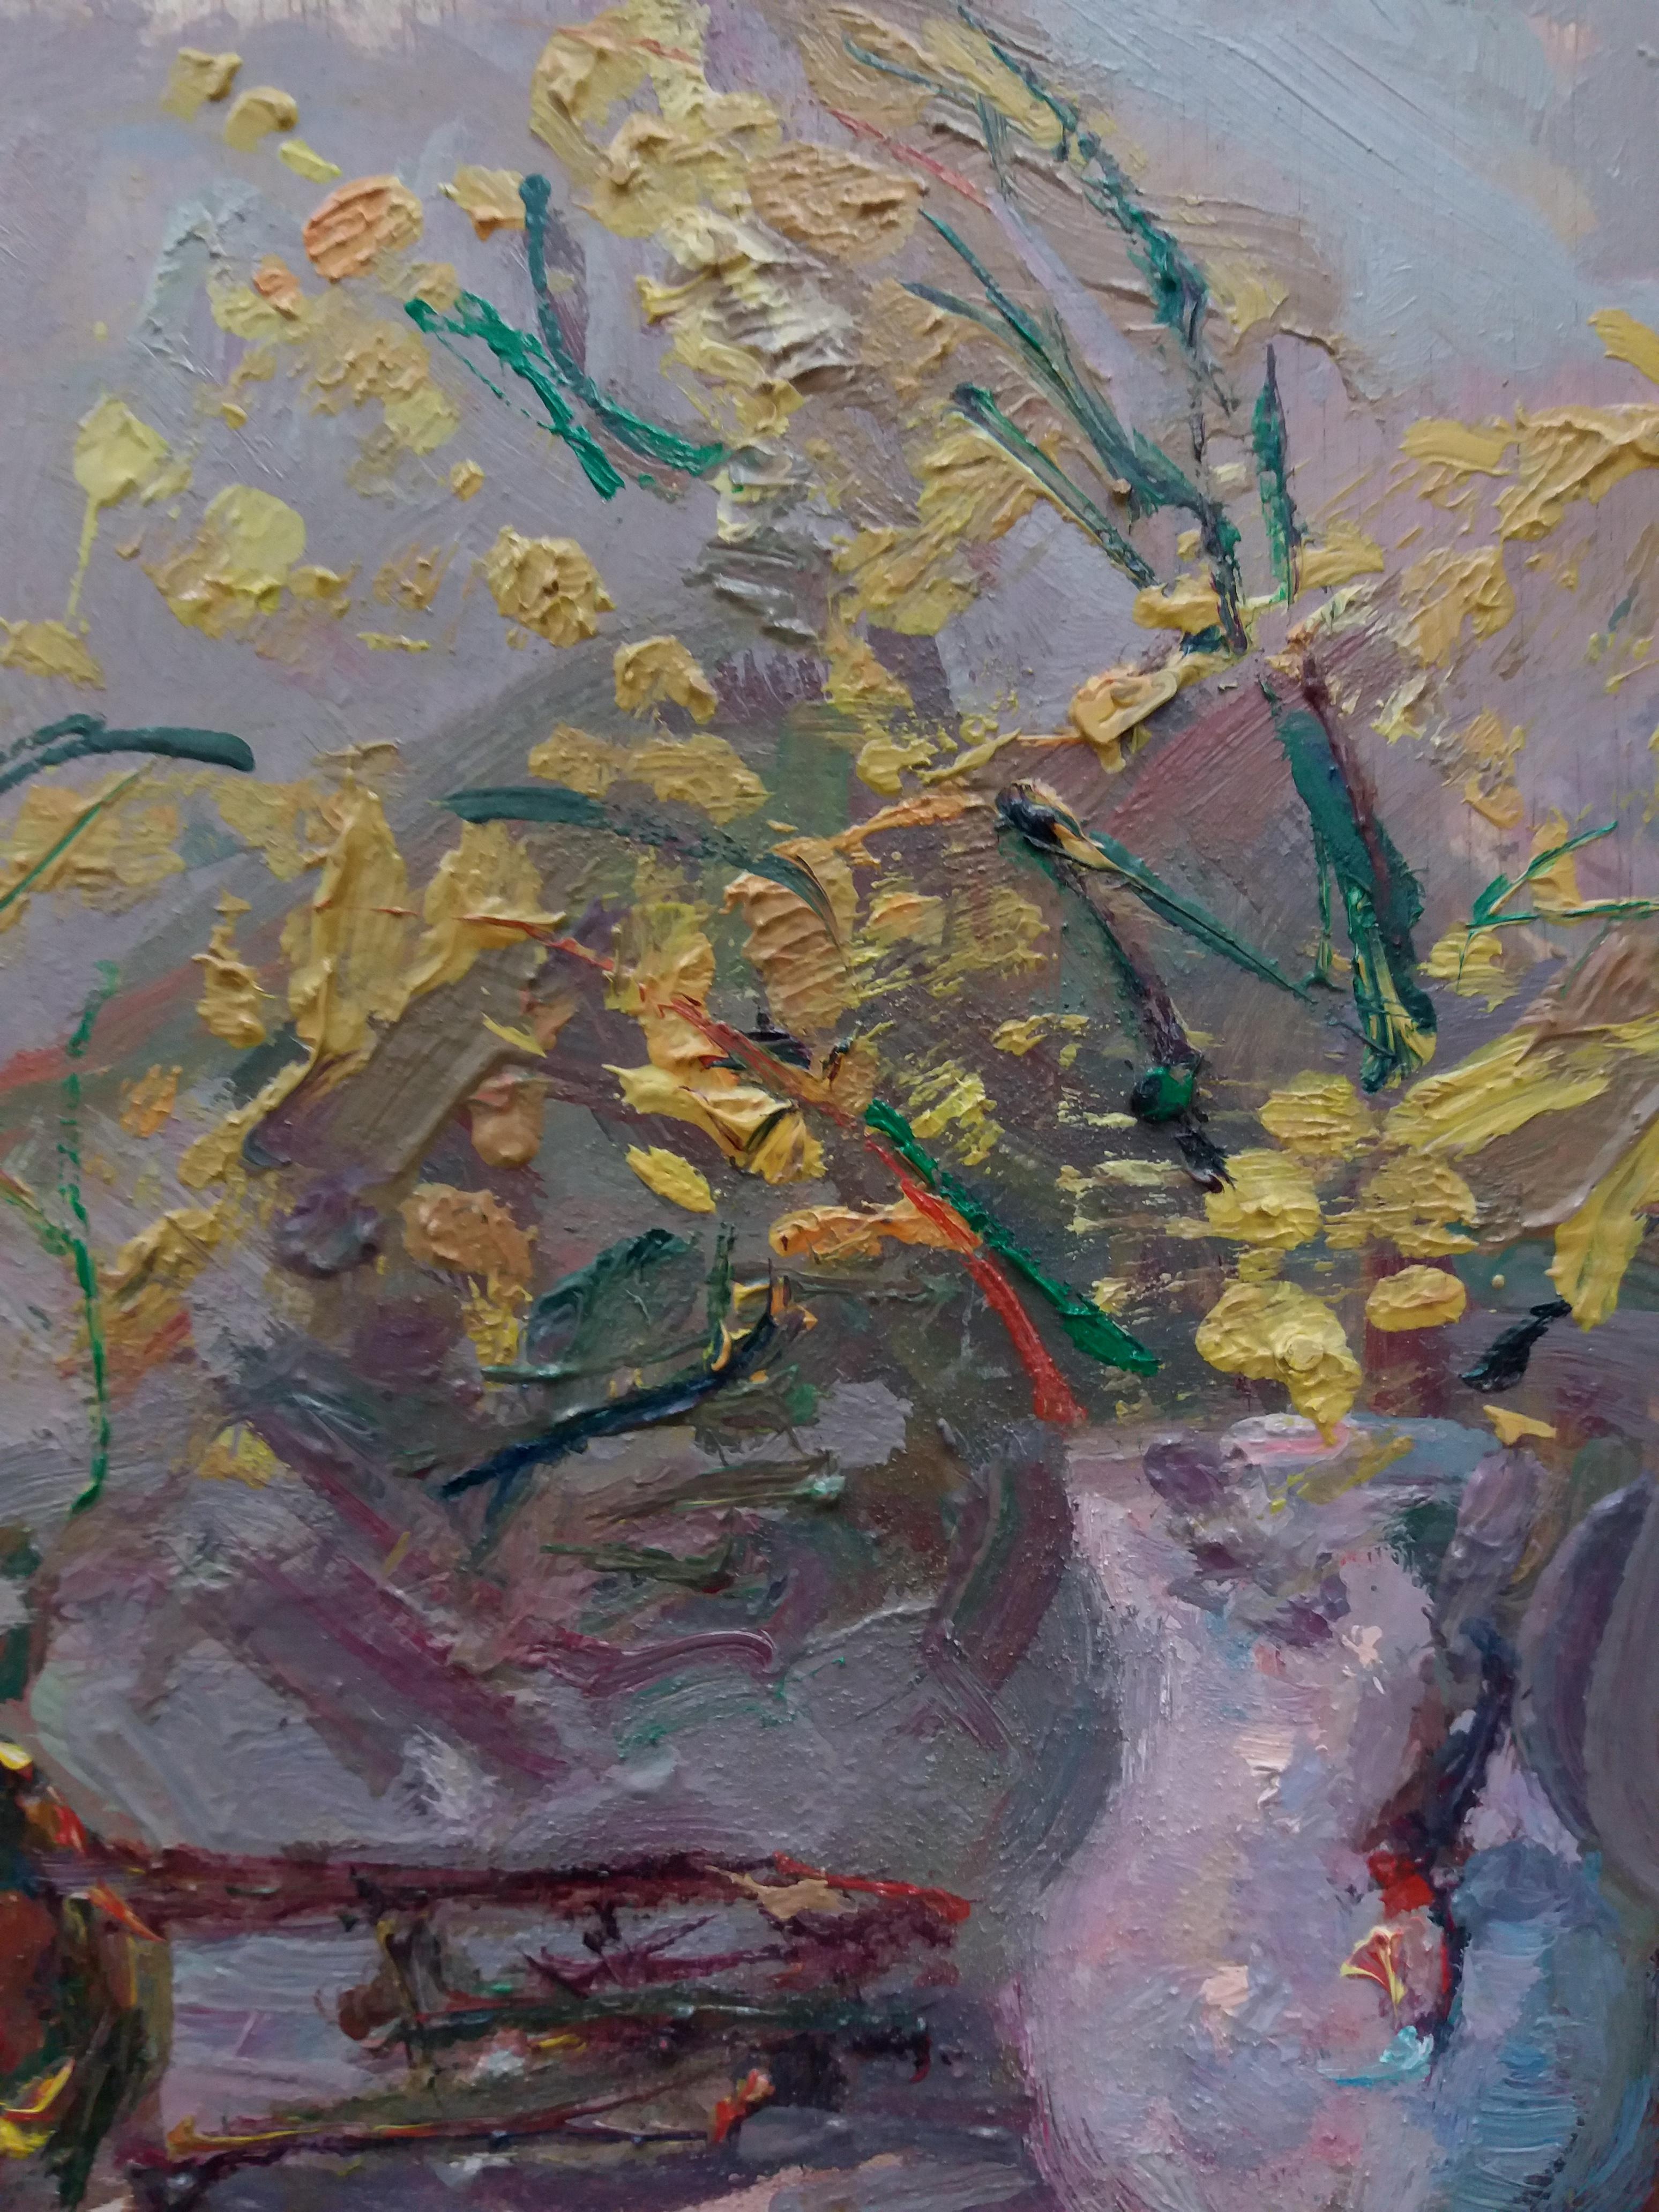 minosaurus und trompete original impressionistisches acrylgemälde.
Sola PUIG, Joan (Barcelona 1950 )

Joan SOLÁ malt auf eine natürliche Art und Weise, die die alten Meister widerspiegelt, indem er die Farben, die Luft, den Geruch und den reinen